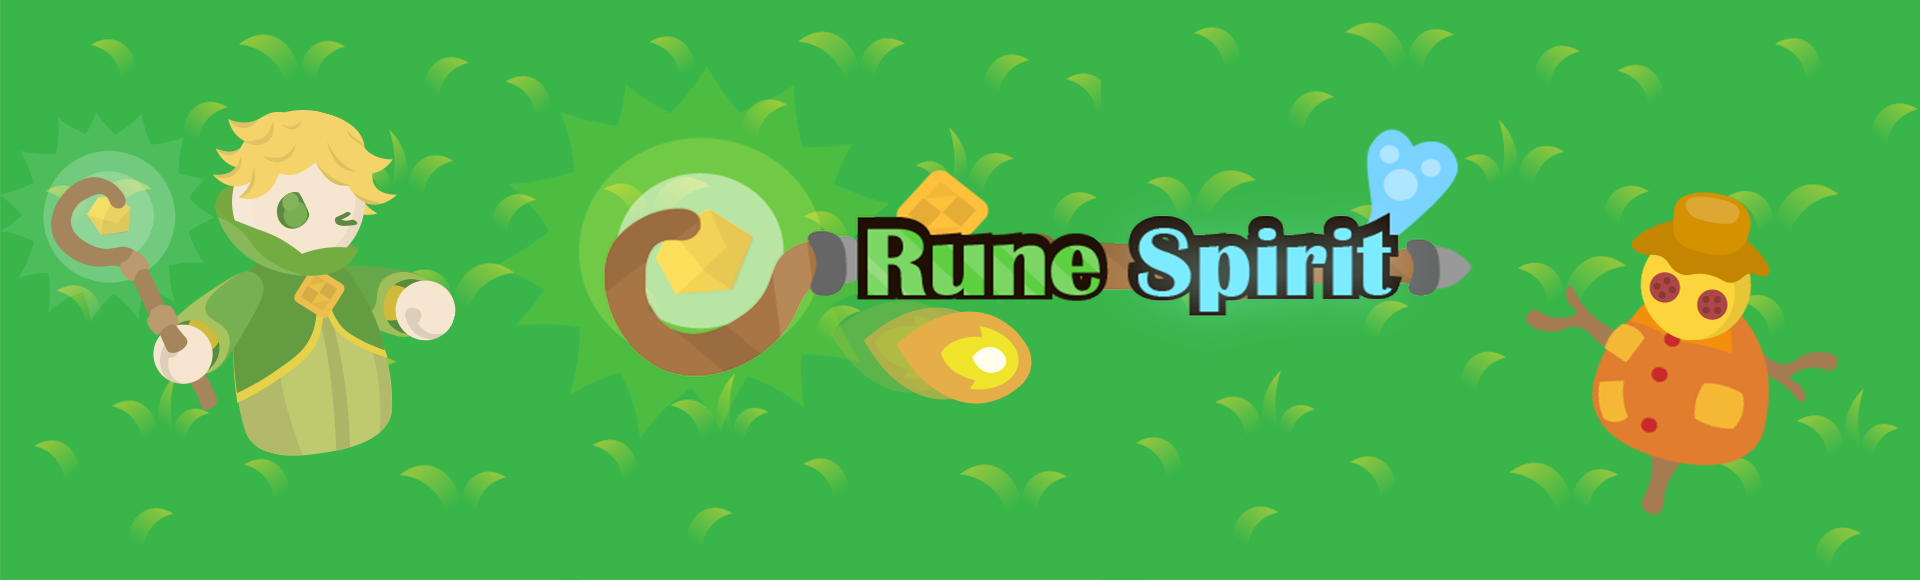 Rune Spirit